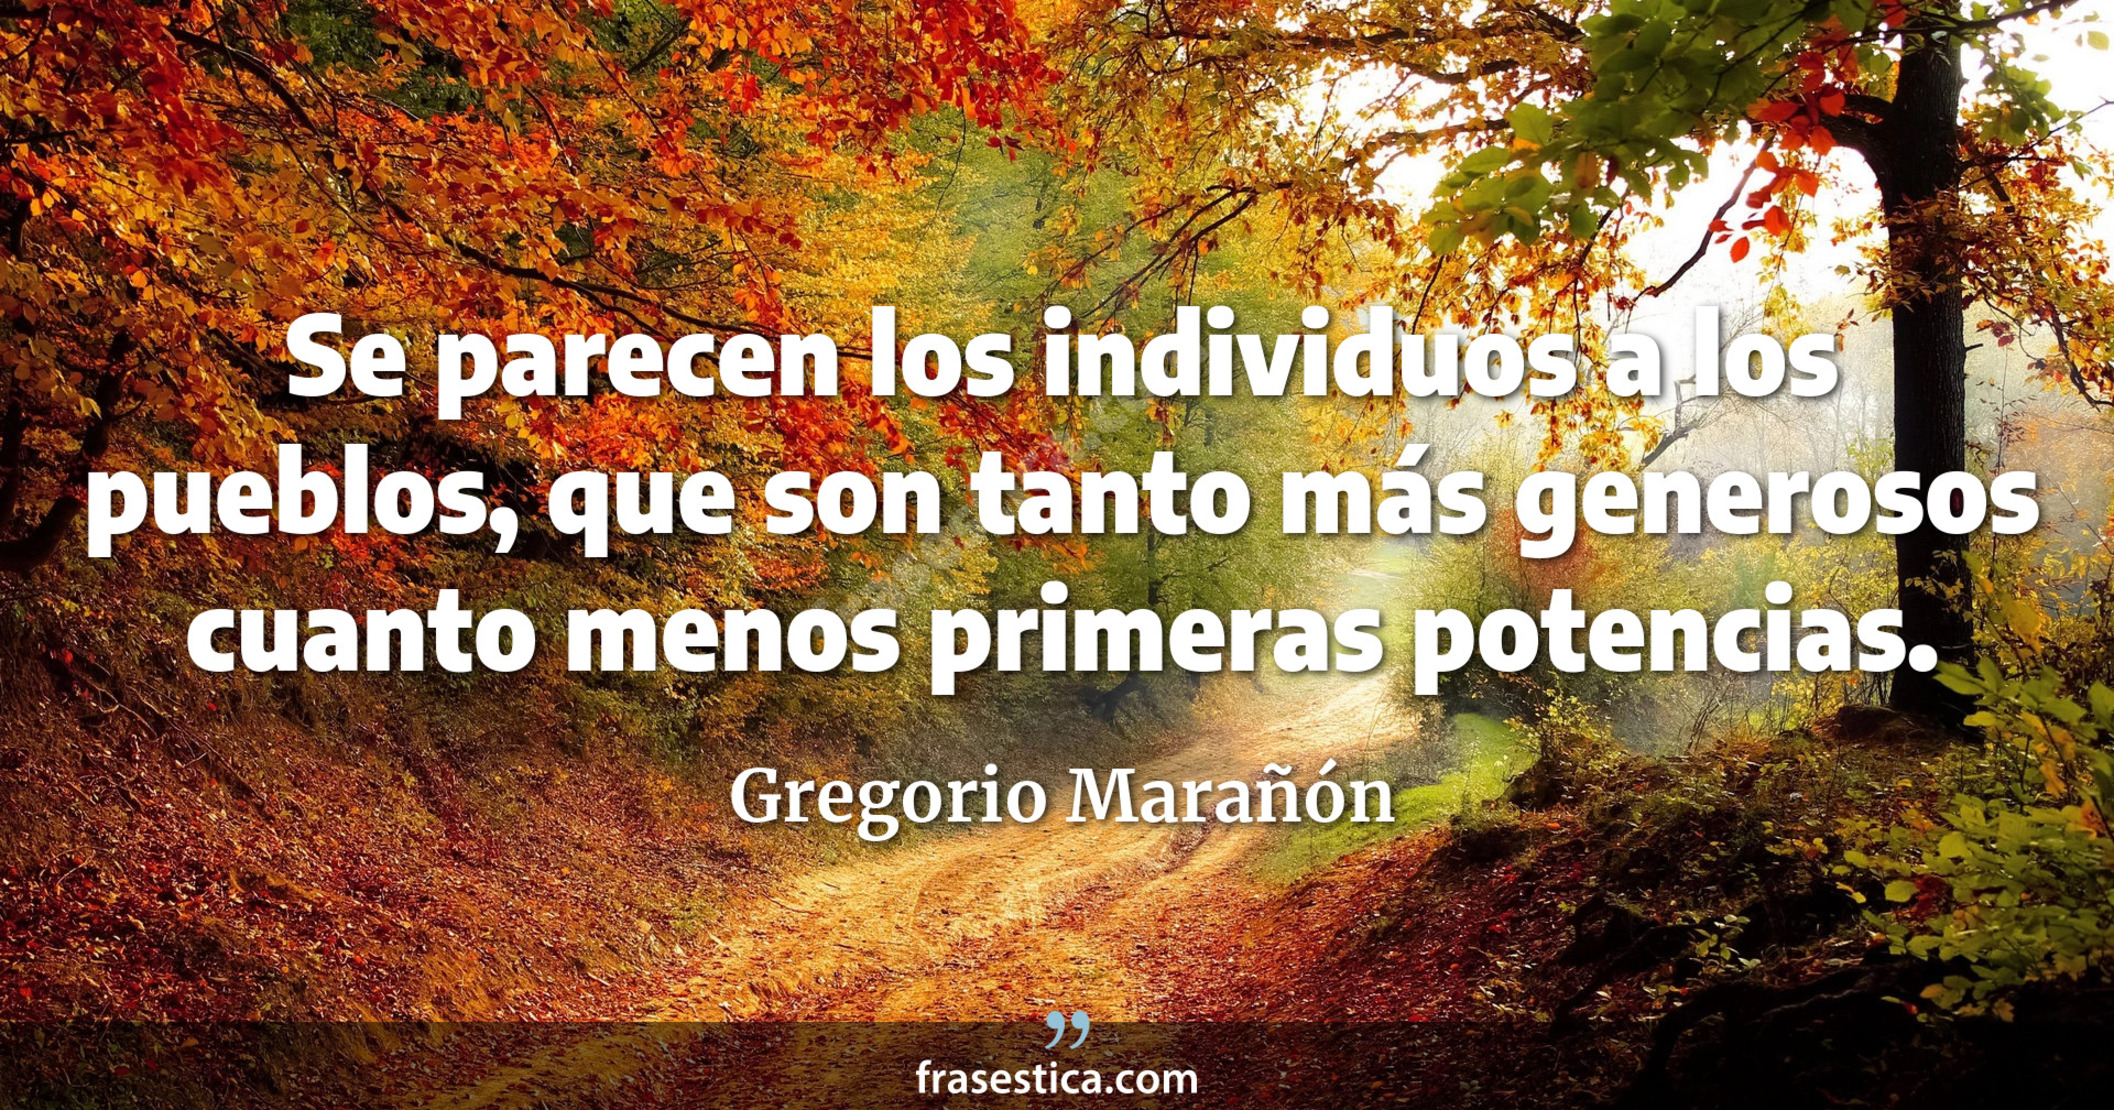 Se parecen los individuos a los pueblos, que son tanto más generosos cuanto menos primeras potencias. - Gregorio Marañón